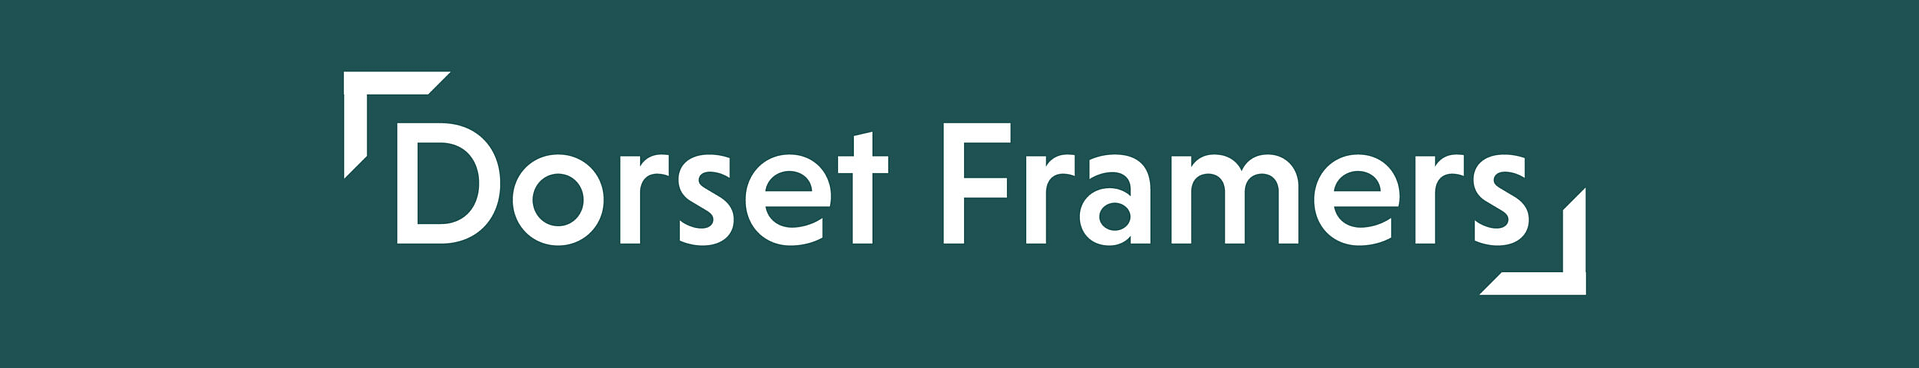 Dorset Framers Logo